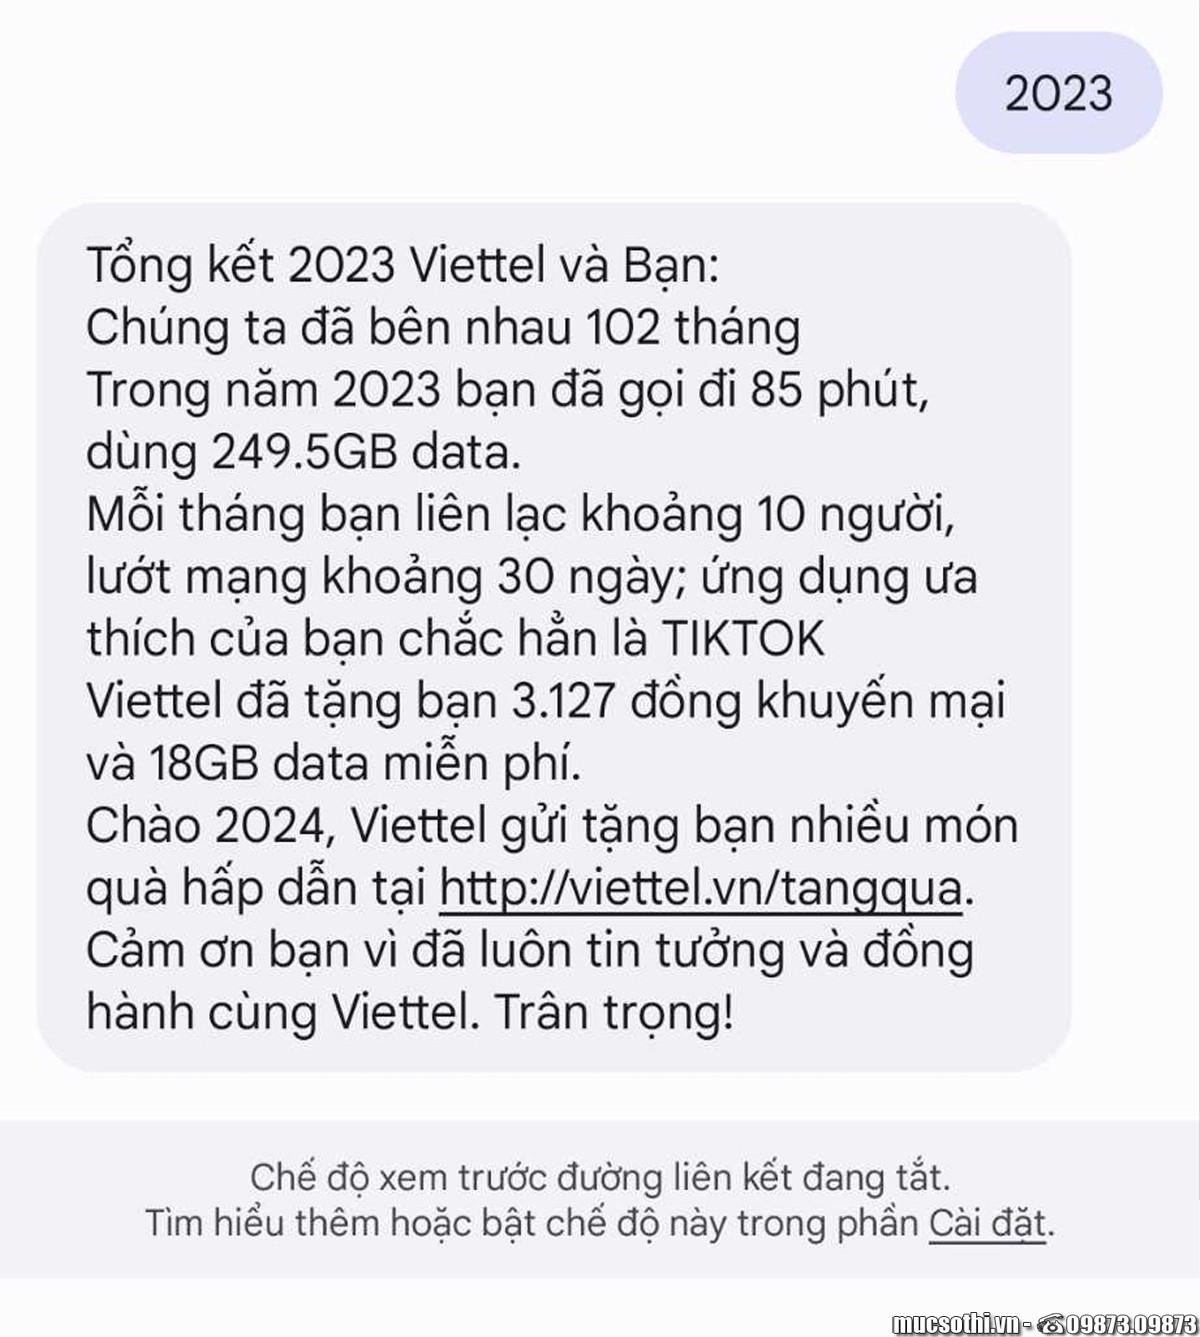 Viettel có chương trình TRI ÂN ƯU ĐÃI LỚN năm 2023 đến người dùng - Kiểm tra nhận ngay - 09873.09873